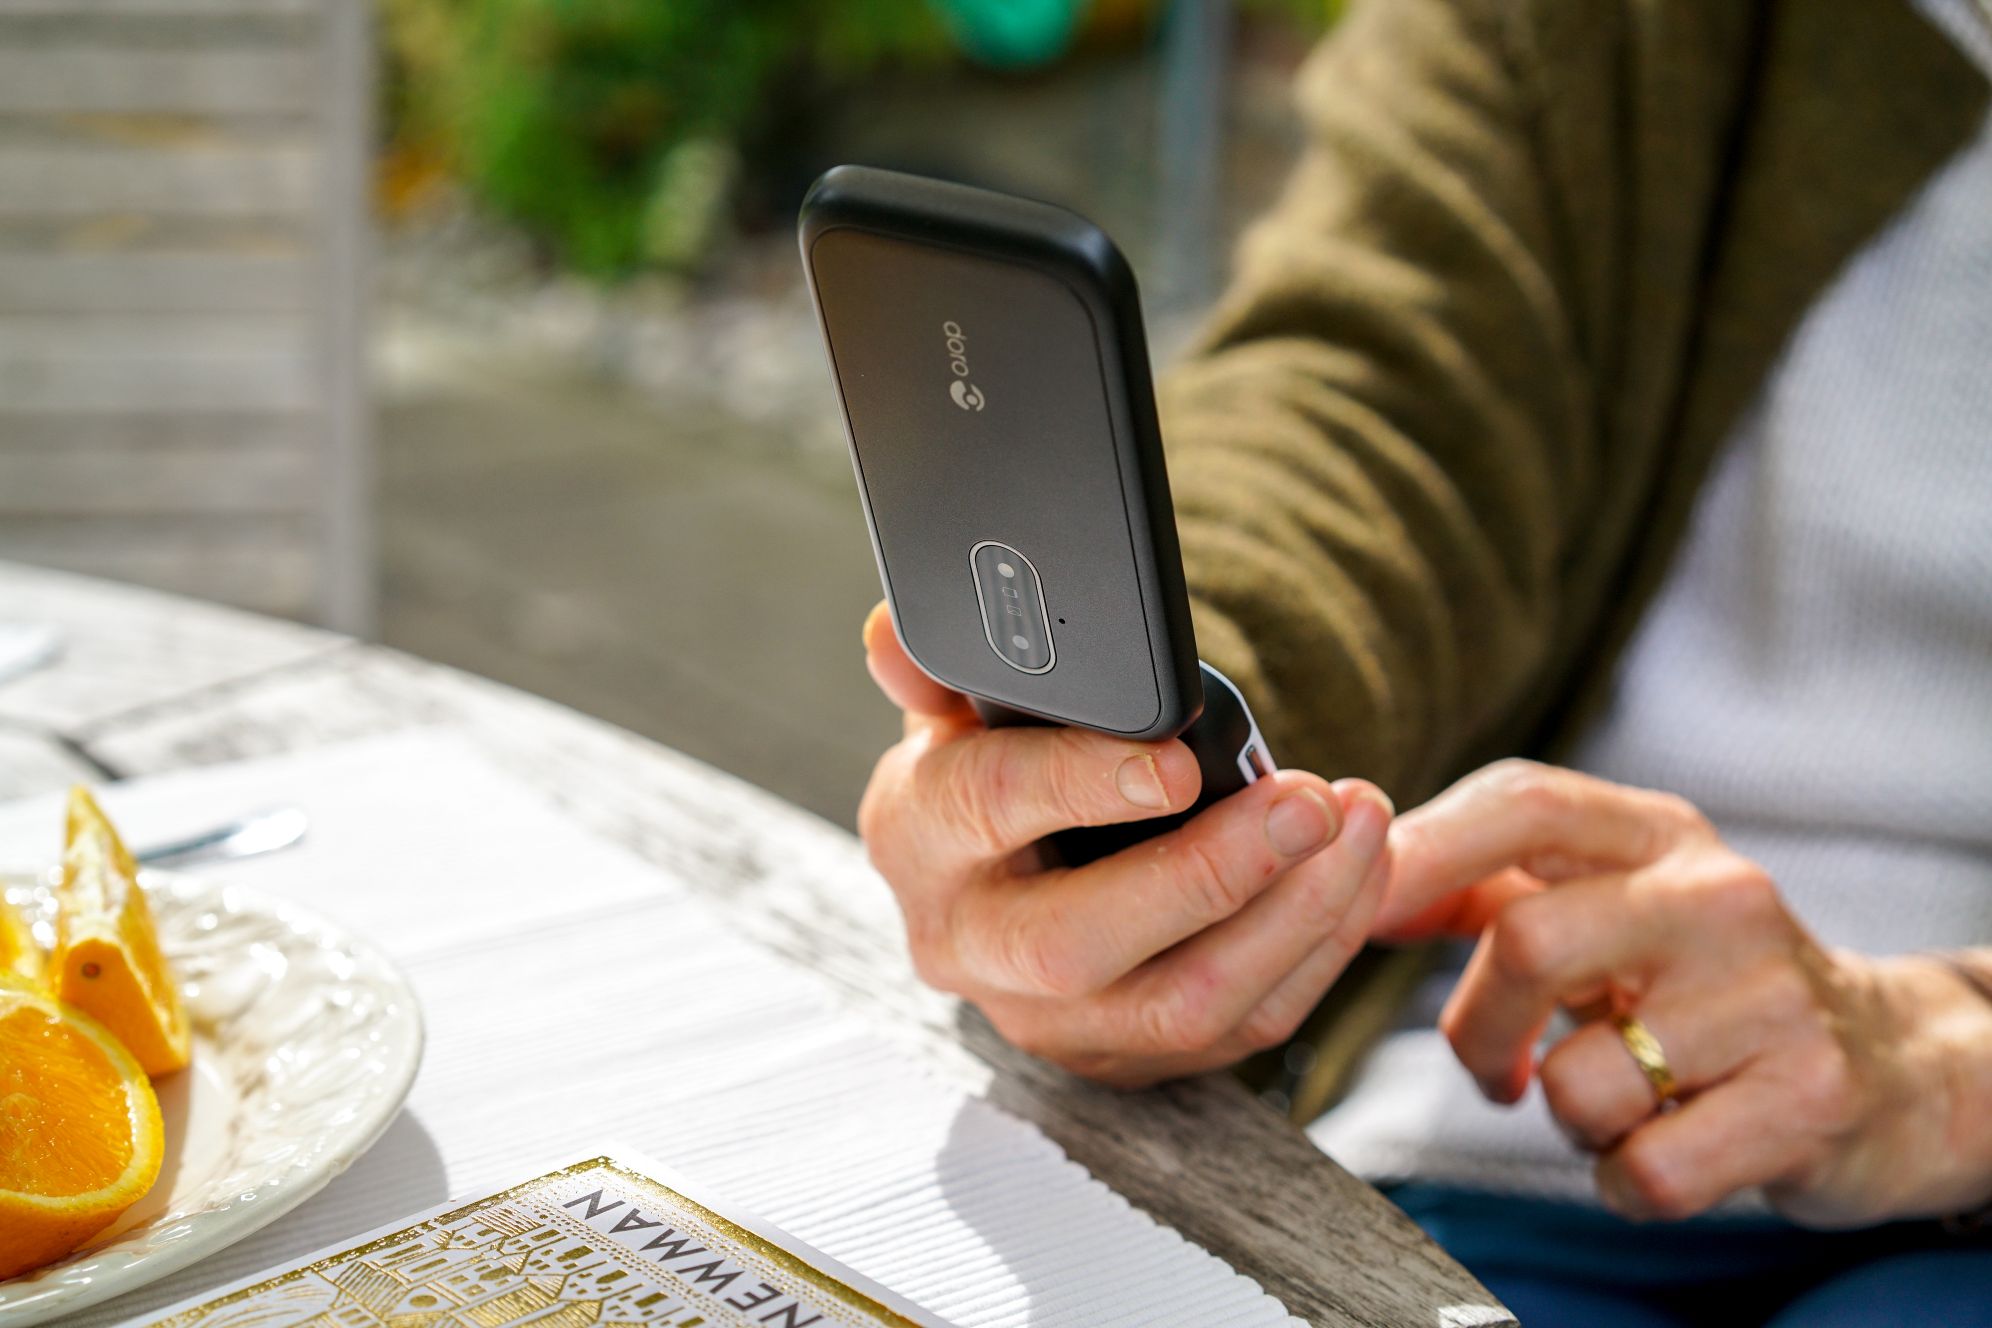 تقدم Doro أربعة هواتف وظيفية في IFA 2019 مصممة لتحسين الحياة اليومية للمستخدمين الأكبر سناً